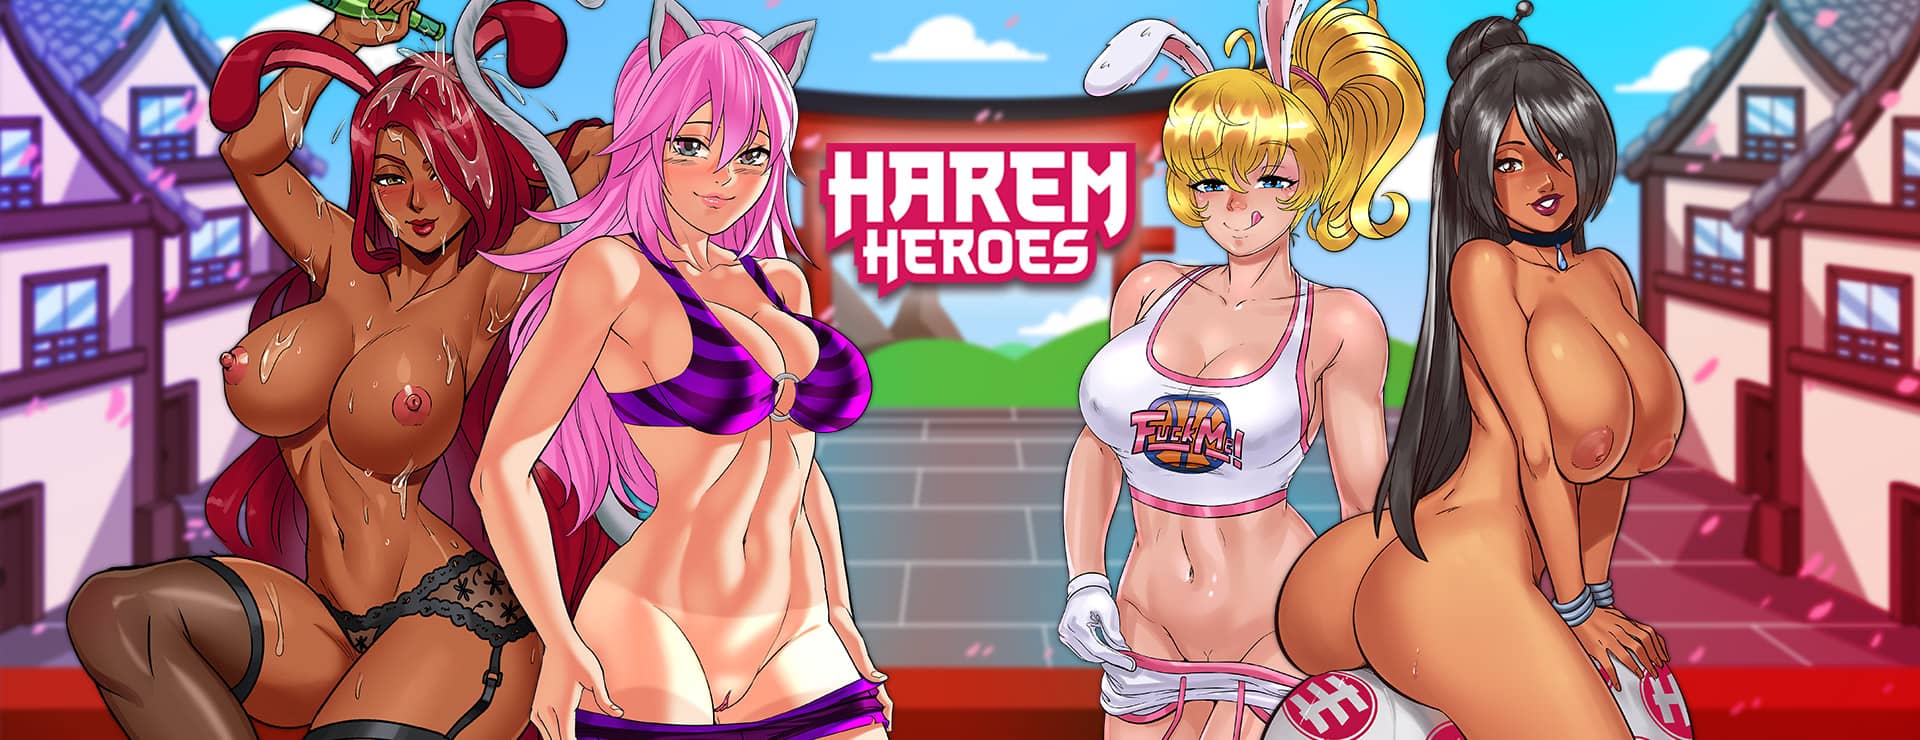 Harem Heroes - Action Adventure Spiel